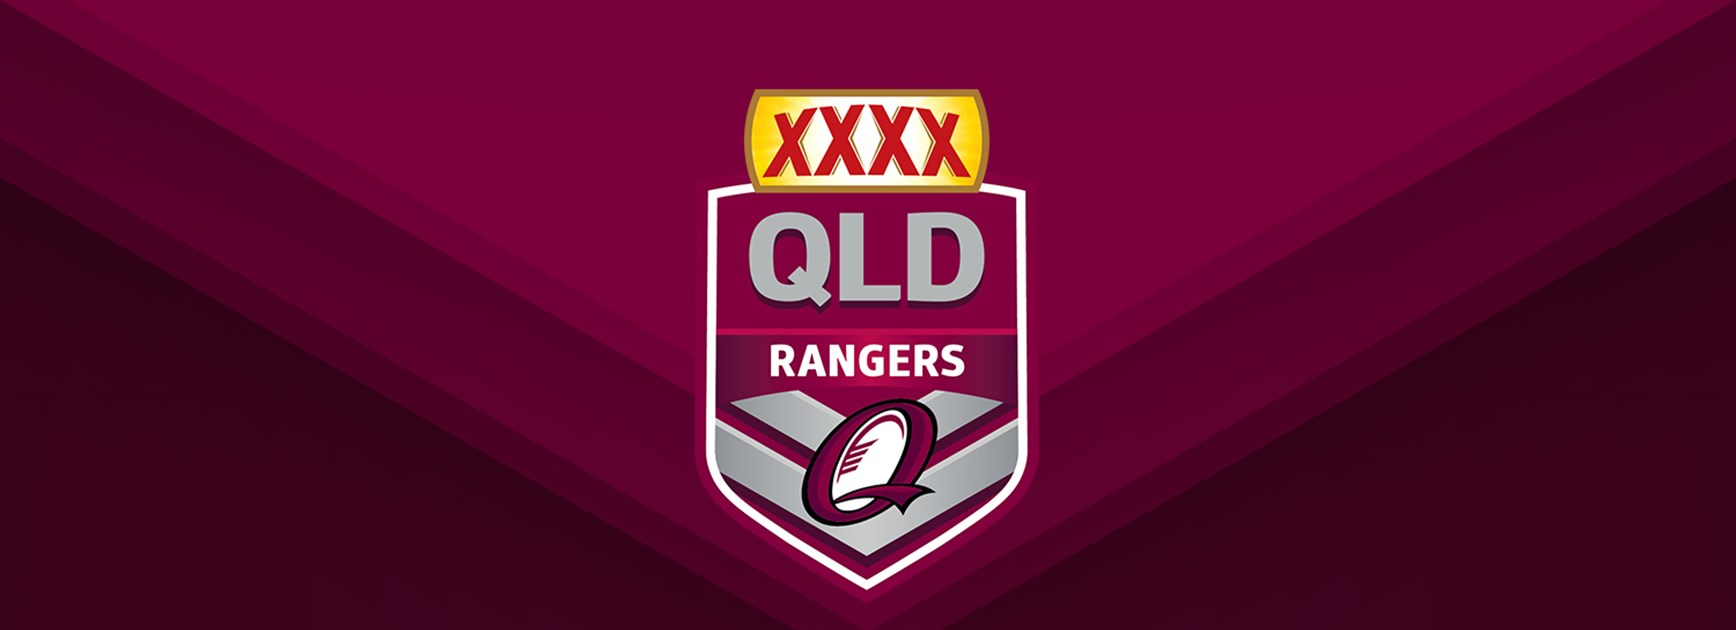 XXXX Queensland Rangers team